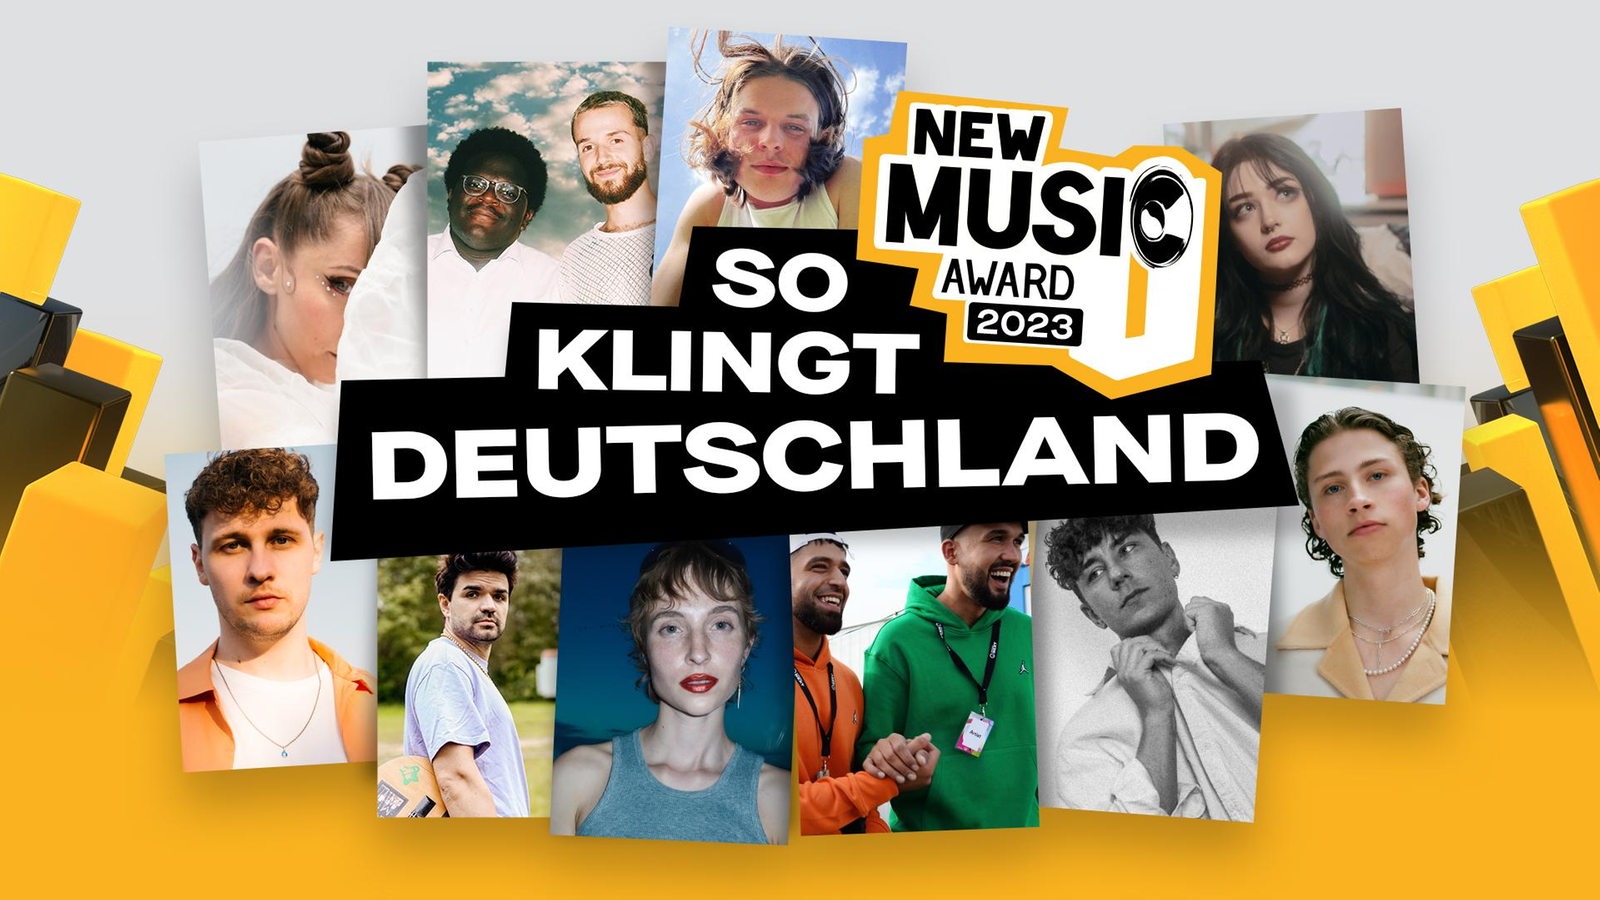 New Music Award – So klingt Deutschland